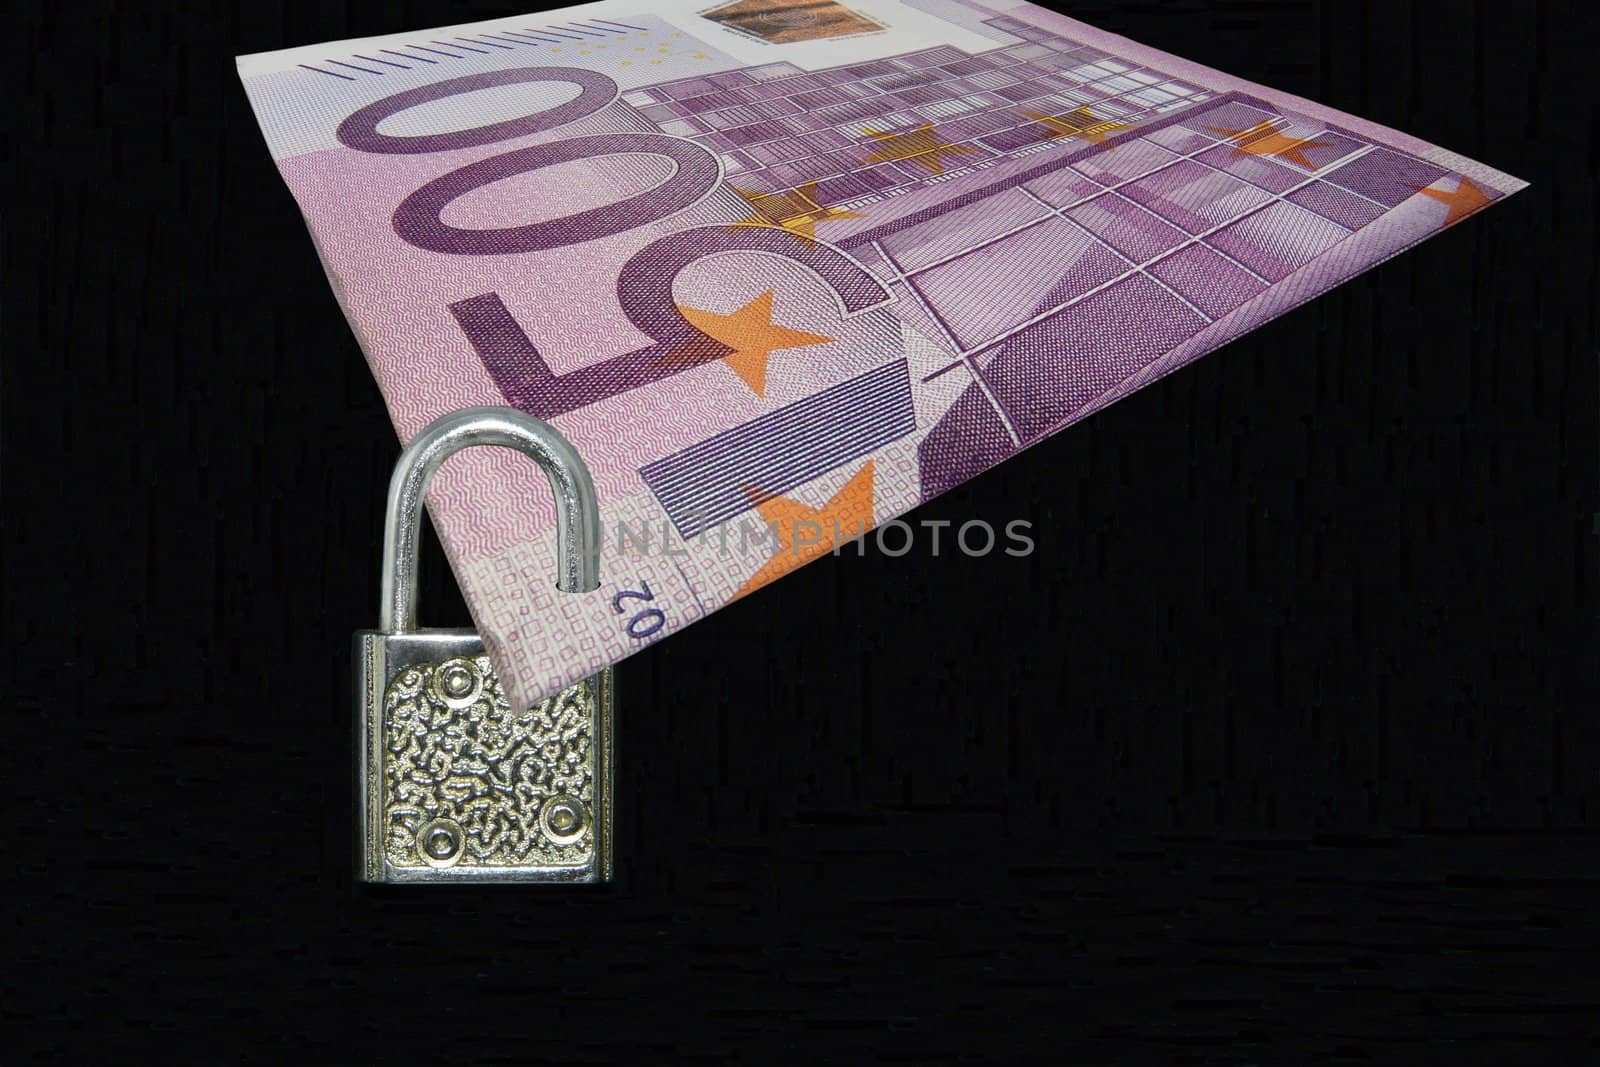 Locked padlock symbolizes safety of your money